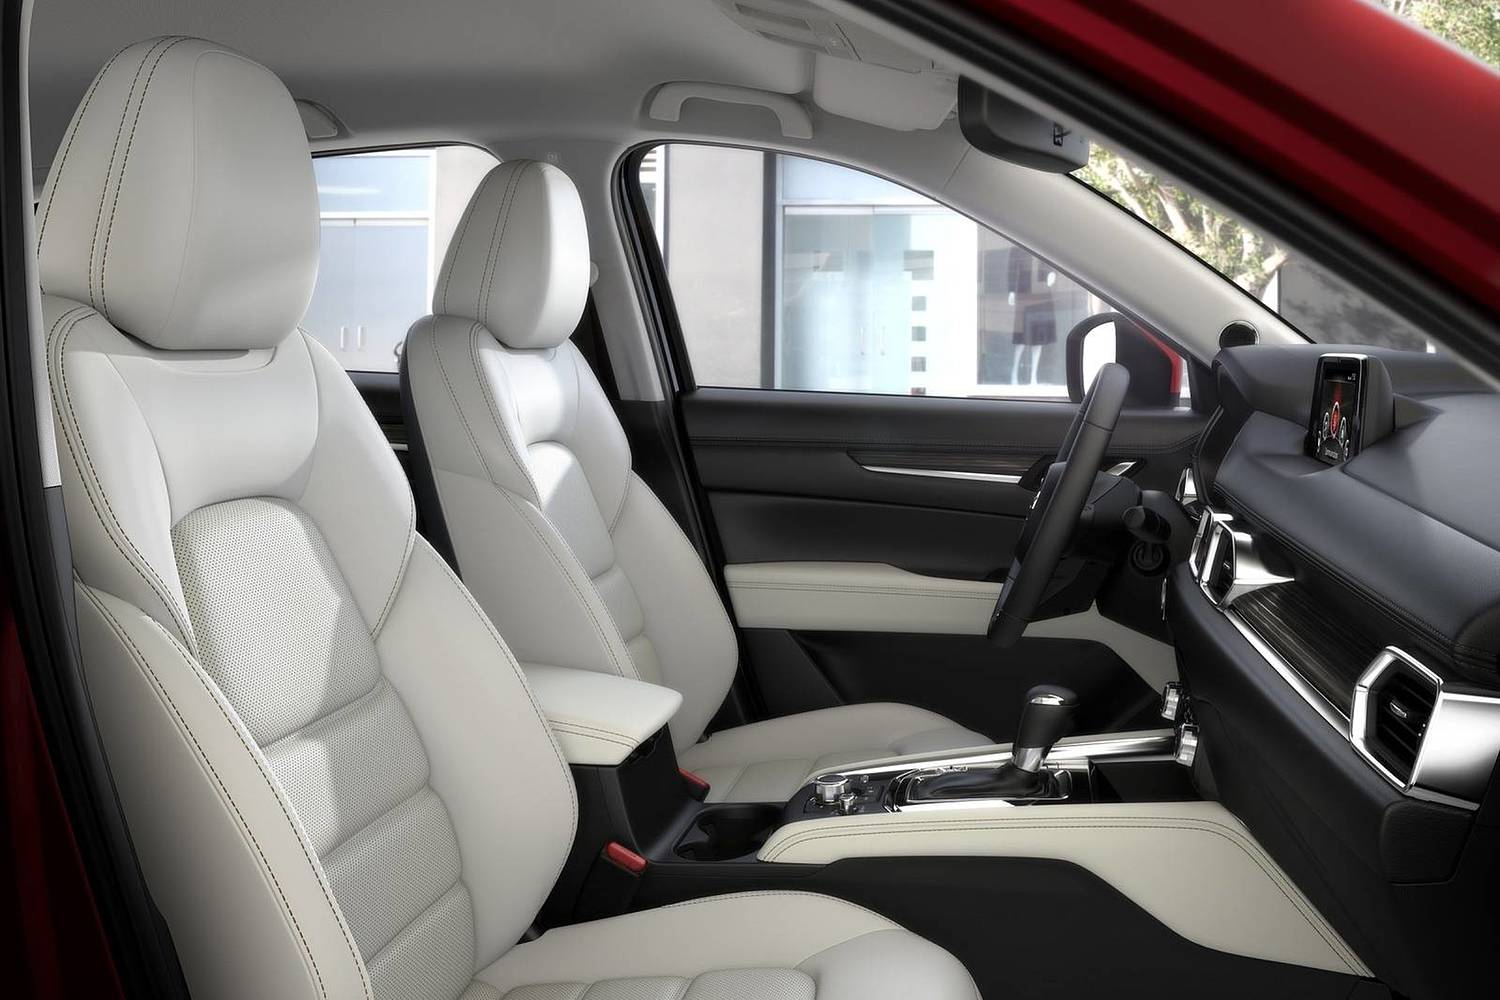 Mazda CX-5 Grand Touring 4dr SUV Interior Shown (2017 model year shown)